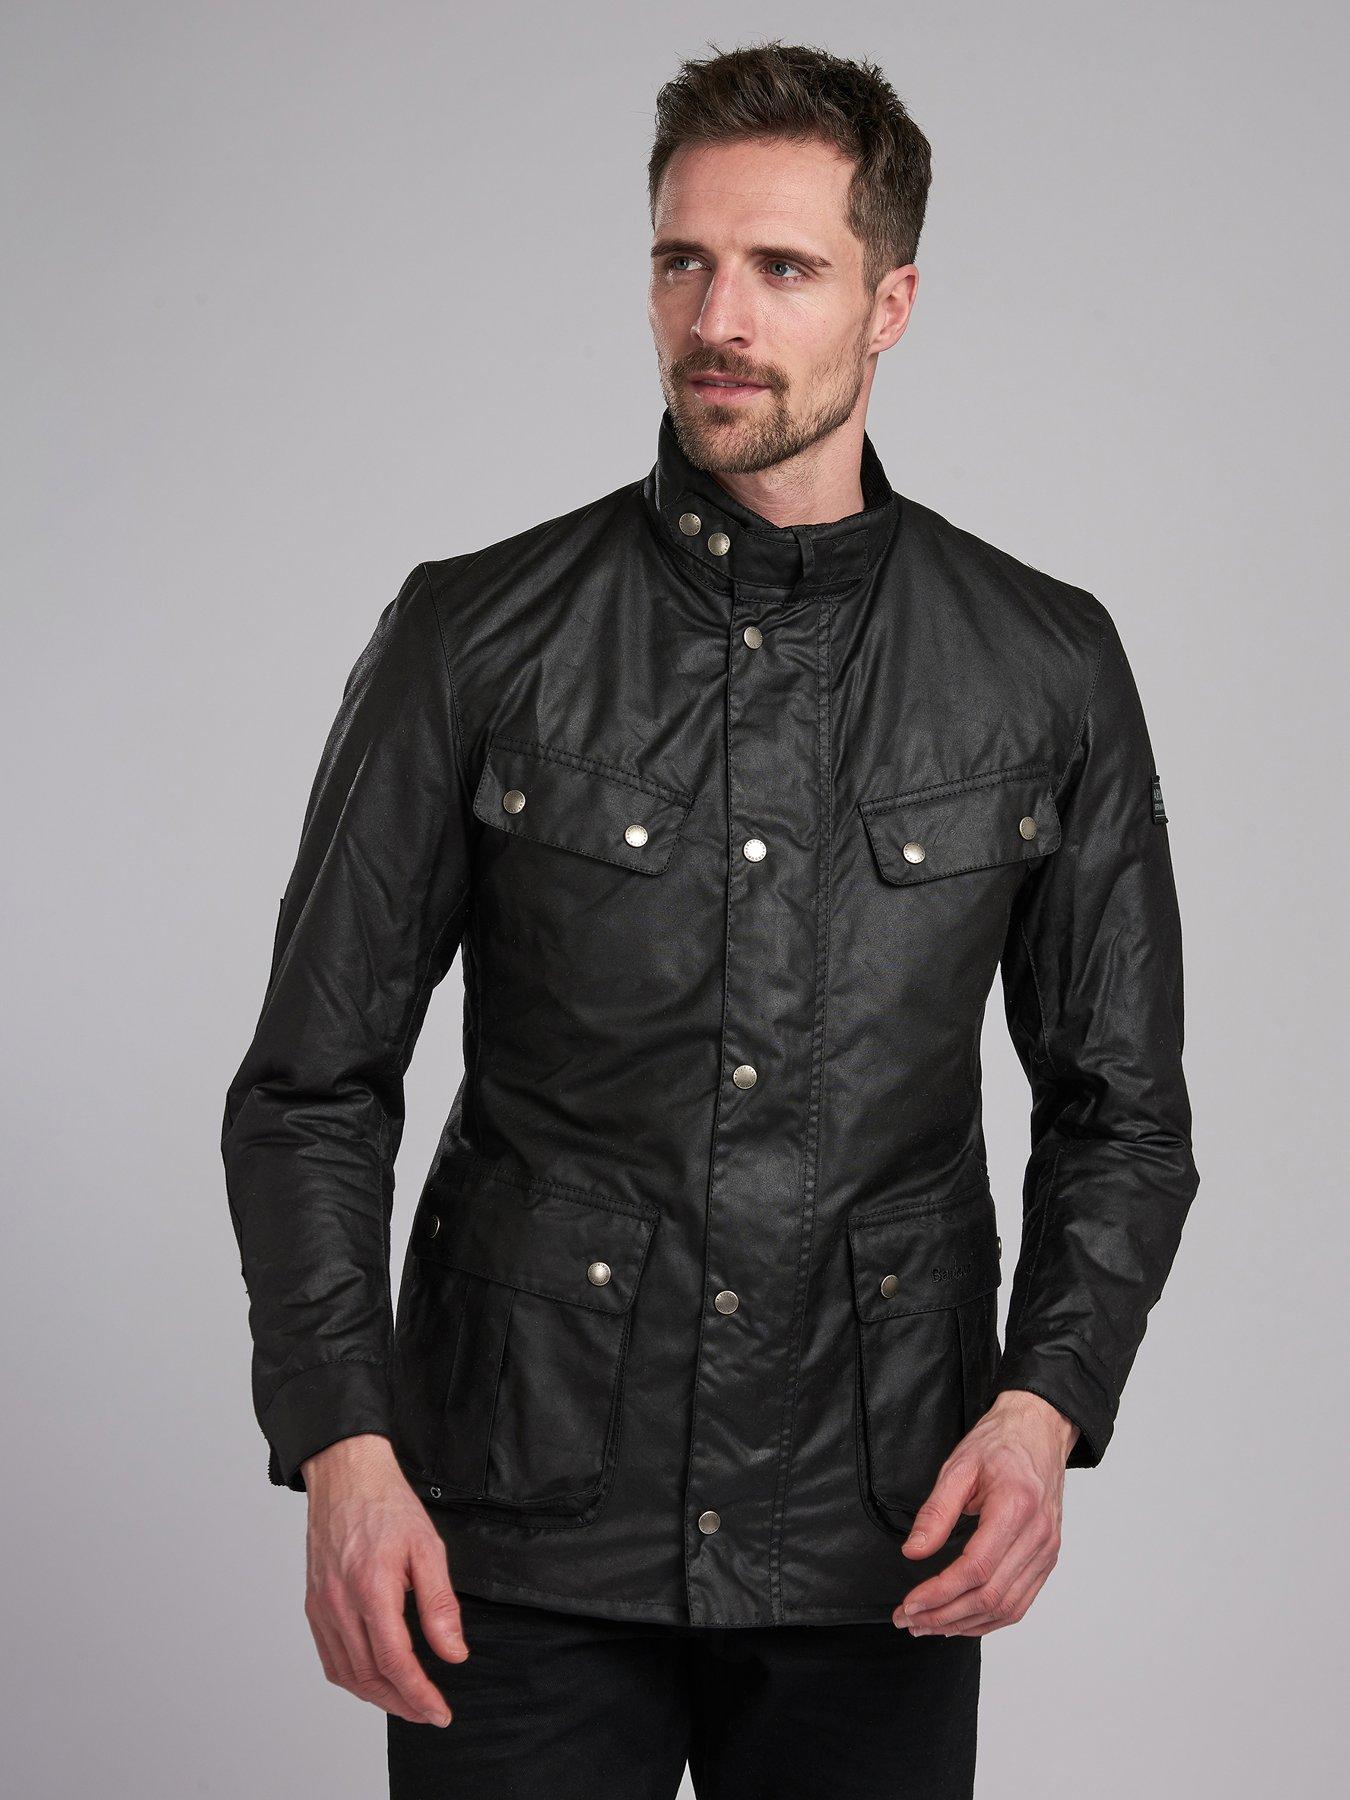 barbour international leather jacket mens